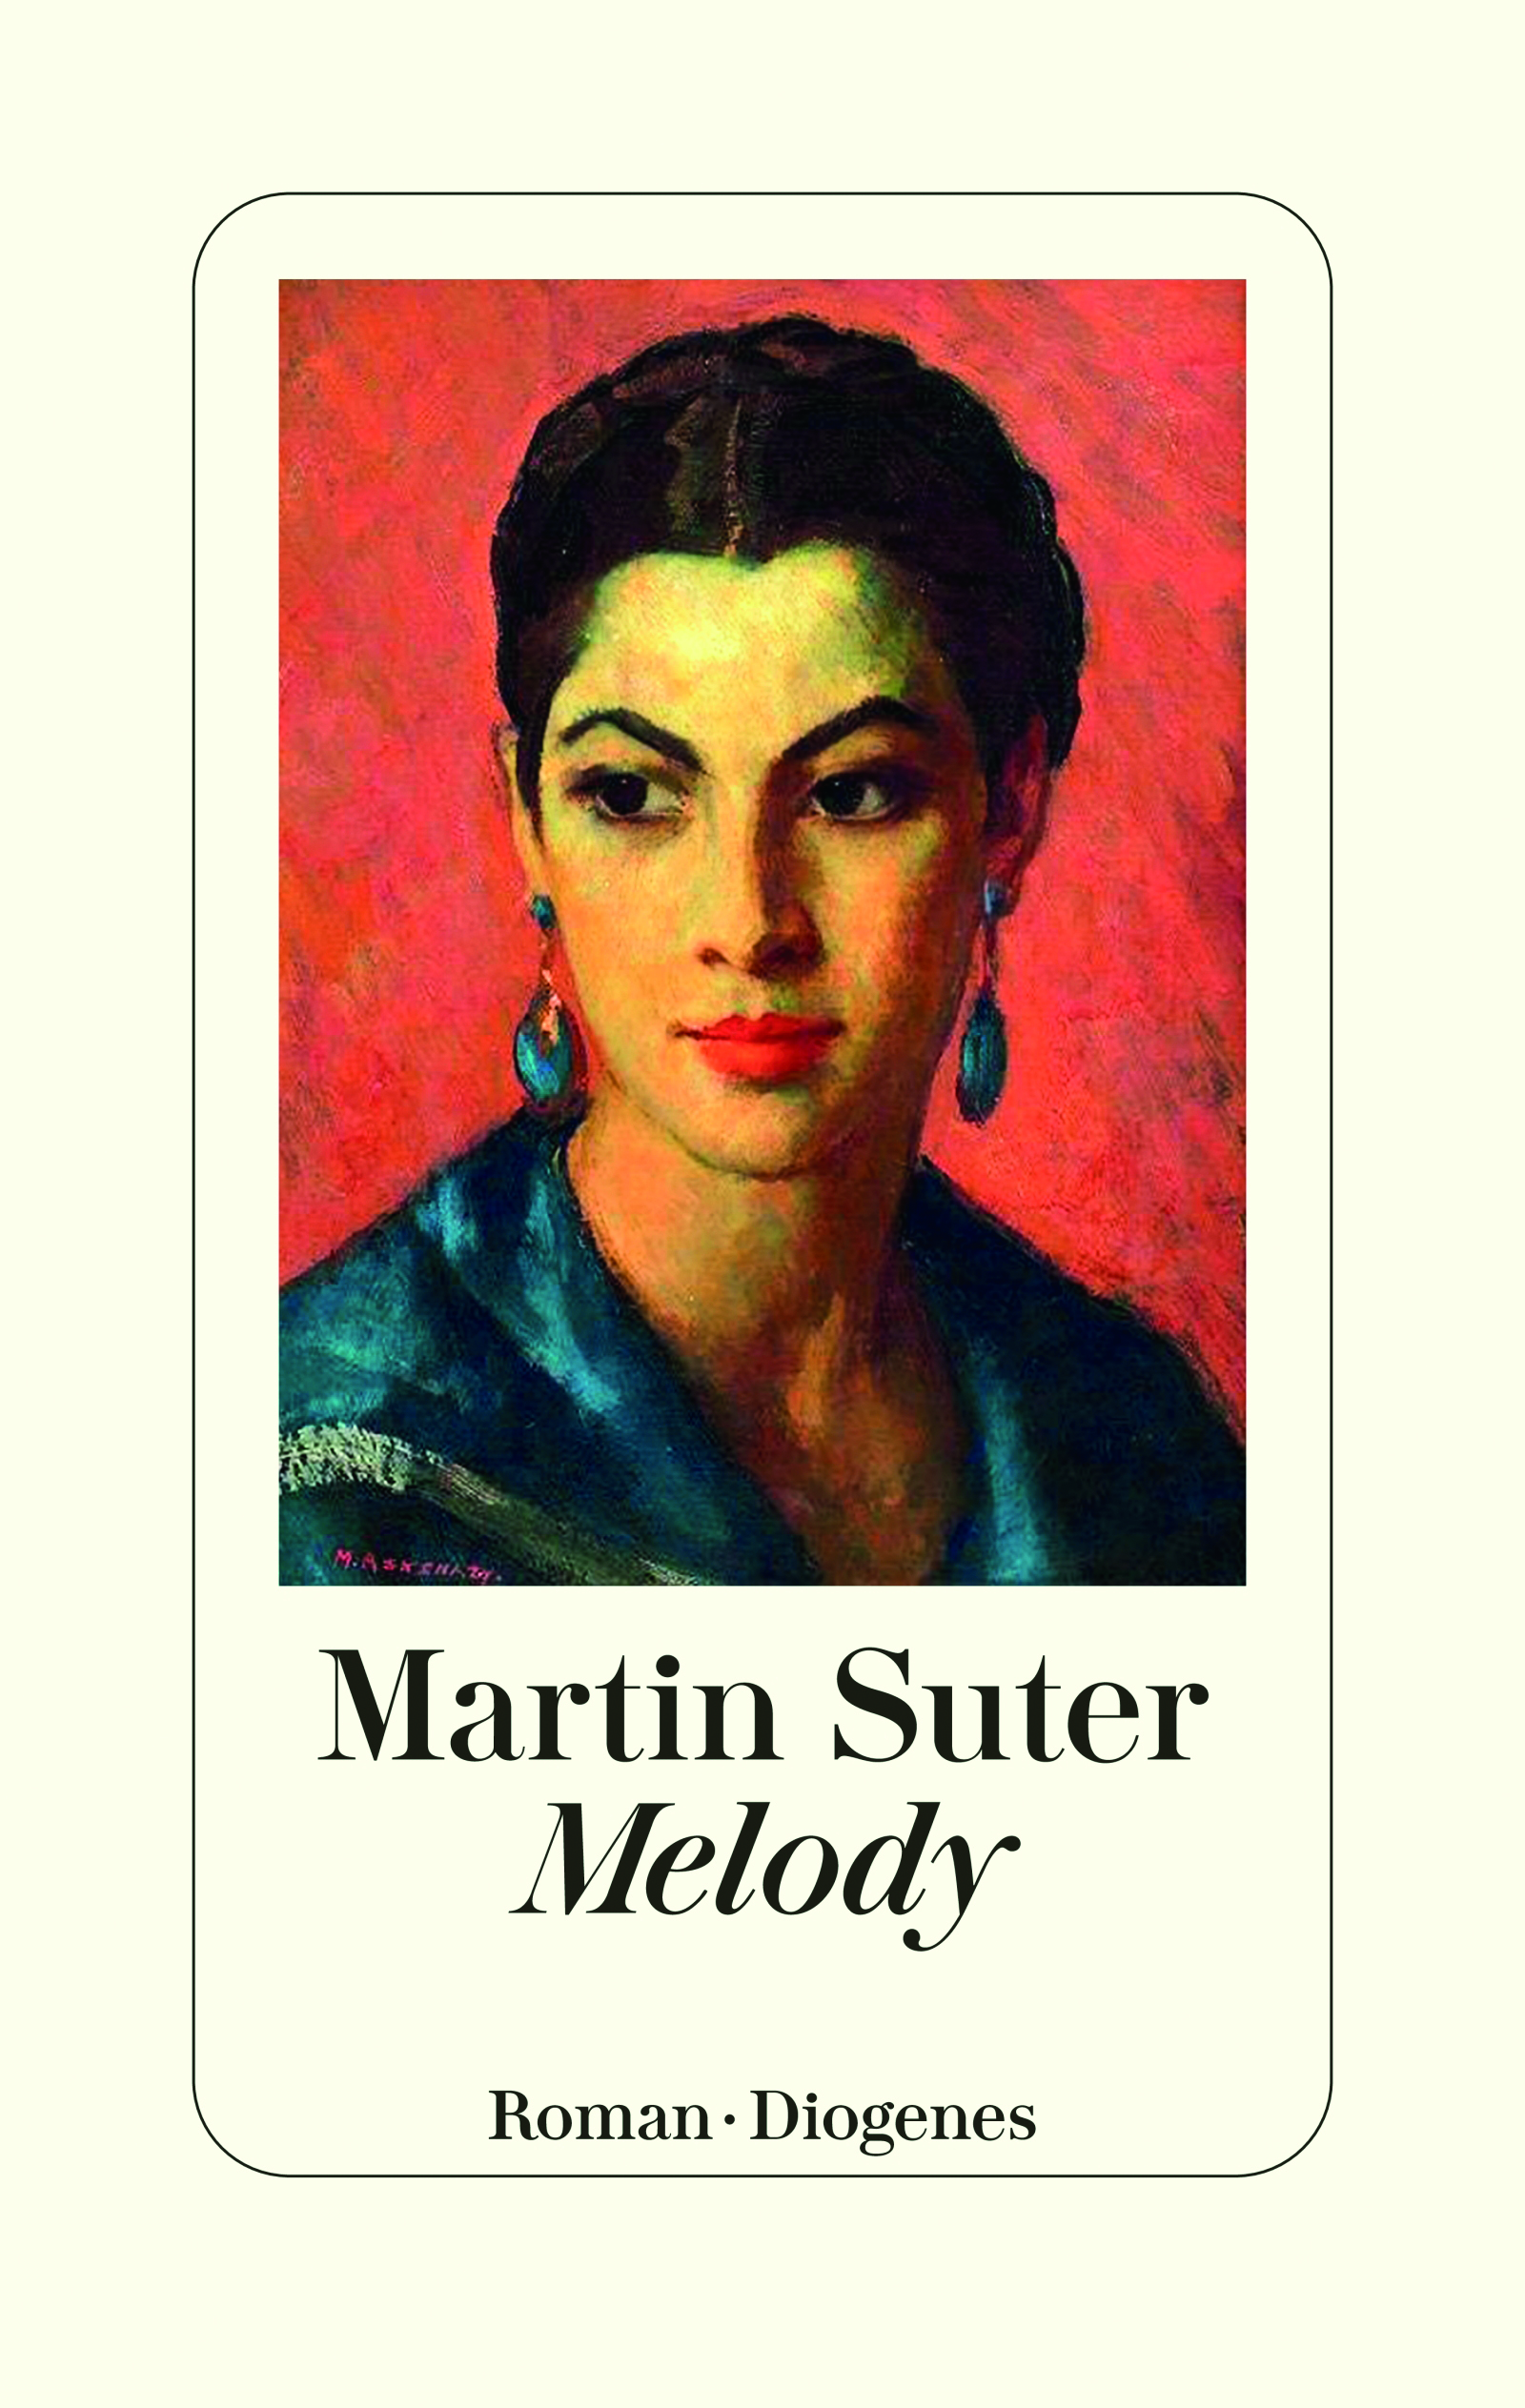 Bild: Buchcover "Melody" von Martin Suter